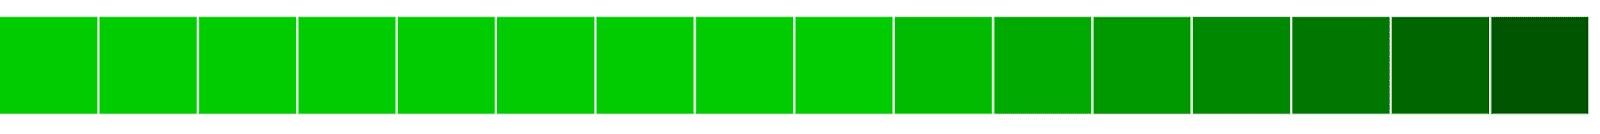 Wyrównanie zielonych bloków w poziomie od jasnego do ciemnego.